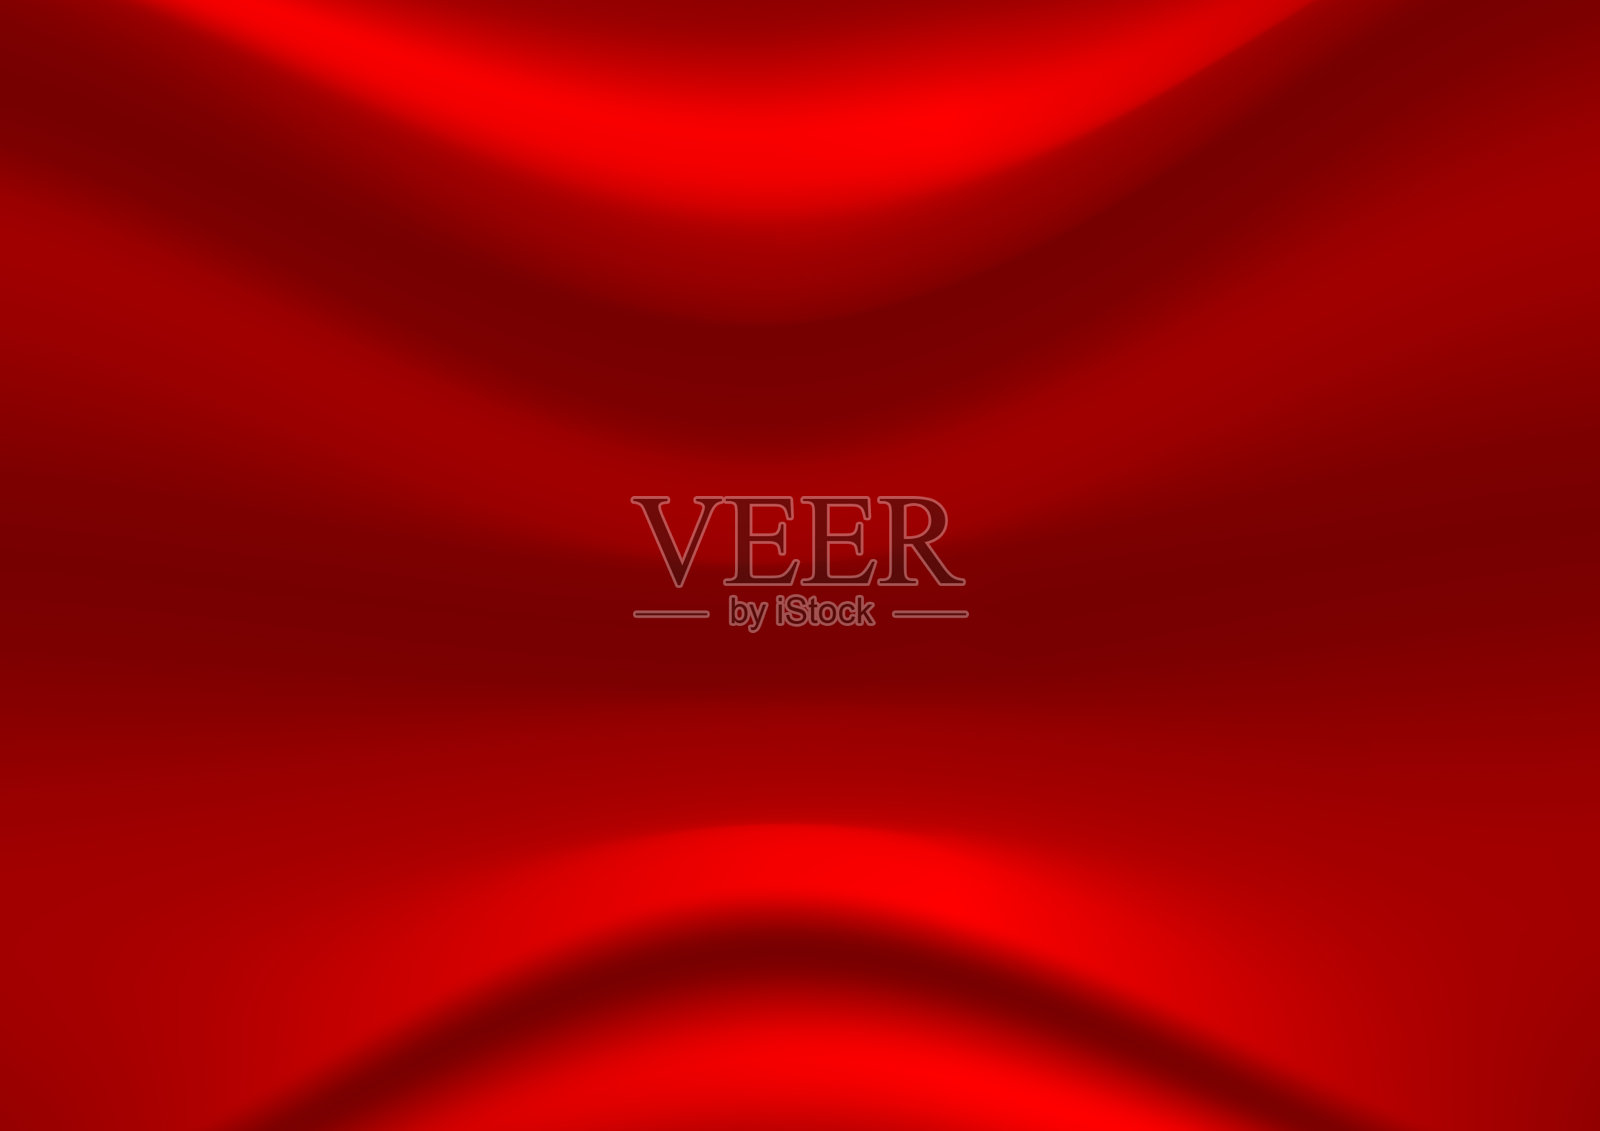 抽象红色矢量背景。缎面奢华的布料质地。光滑优雅的丝绸插画图片素材